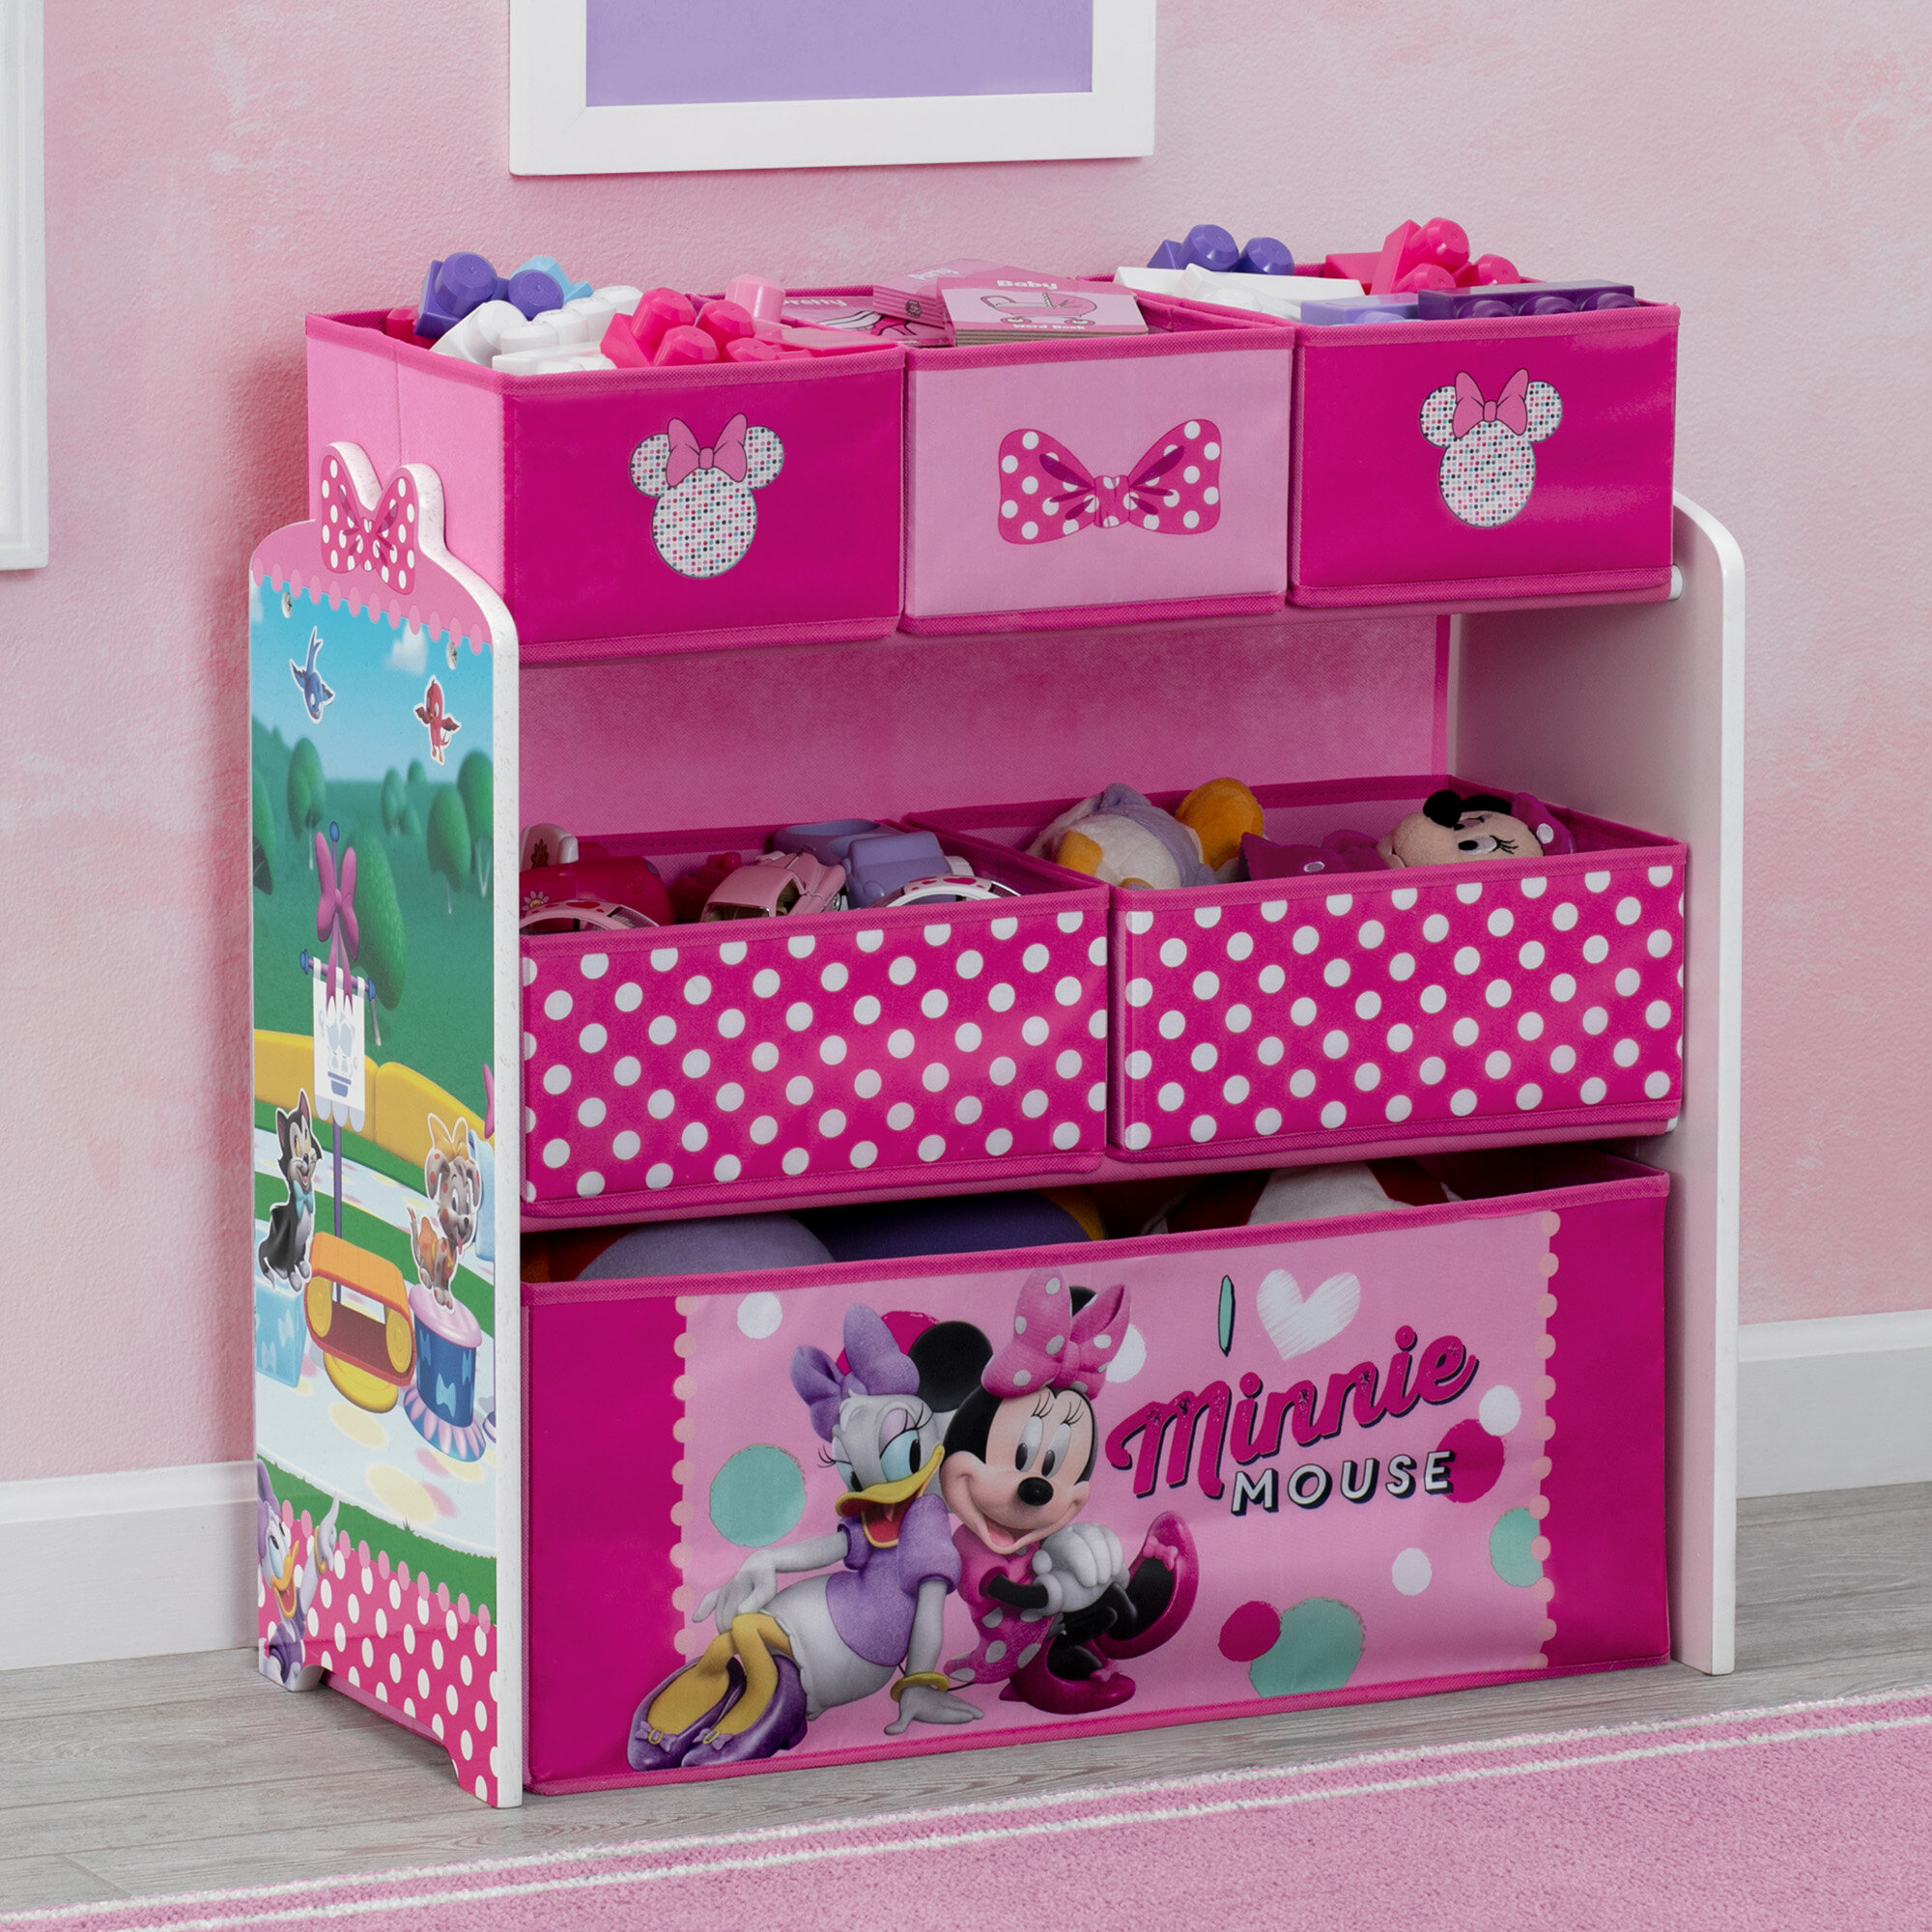 Minnie Mouse Toy Organizer Storage Multi Bin Children Room Furniture Box Cubby